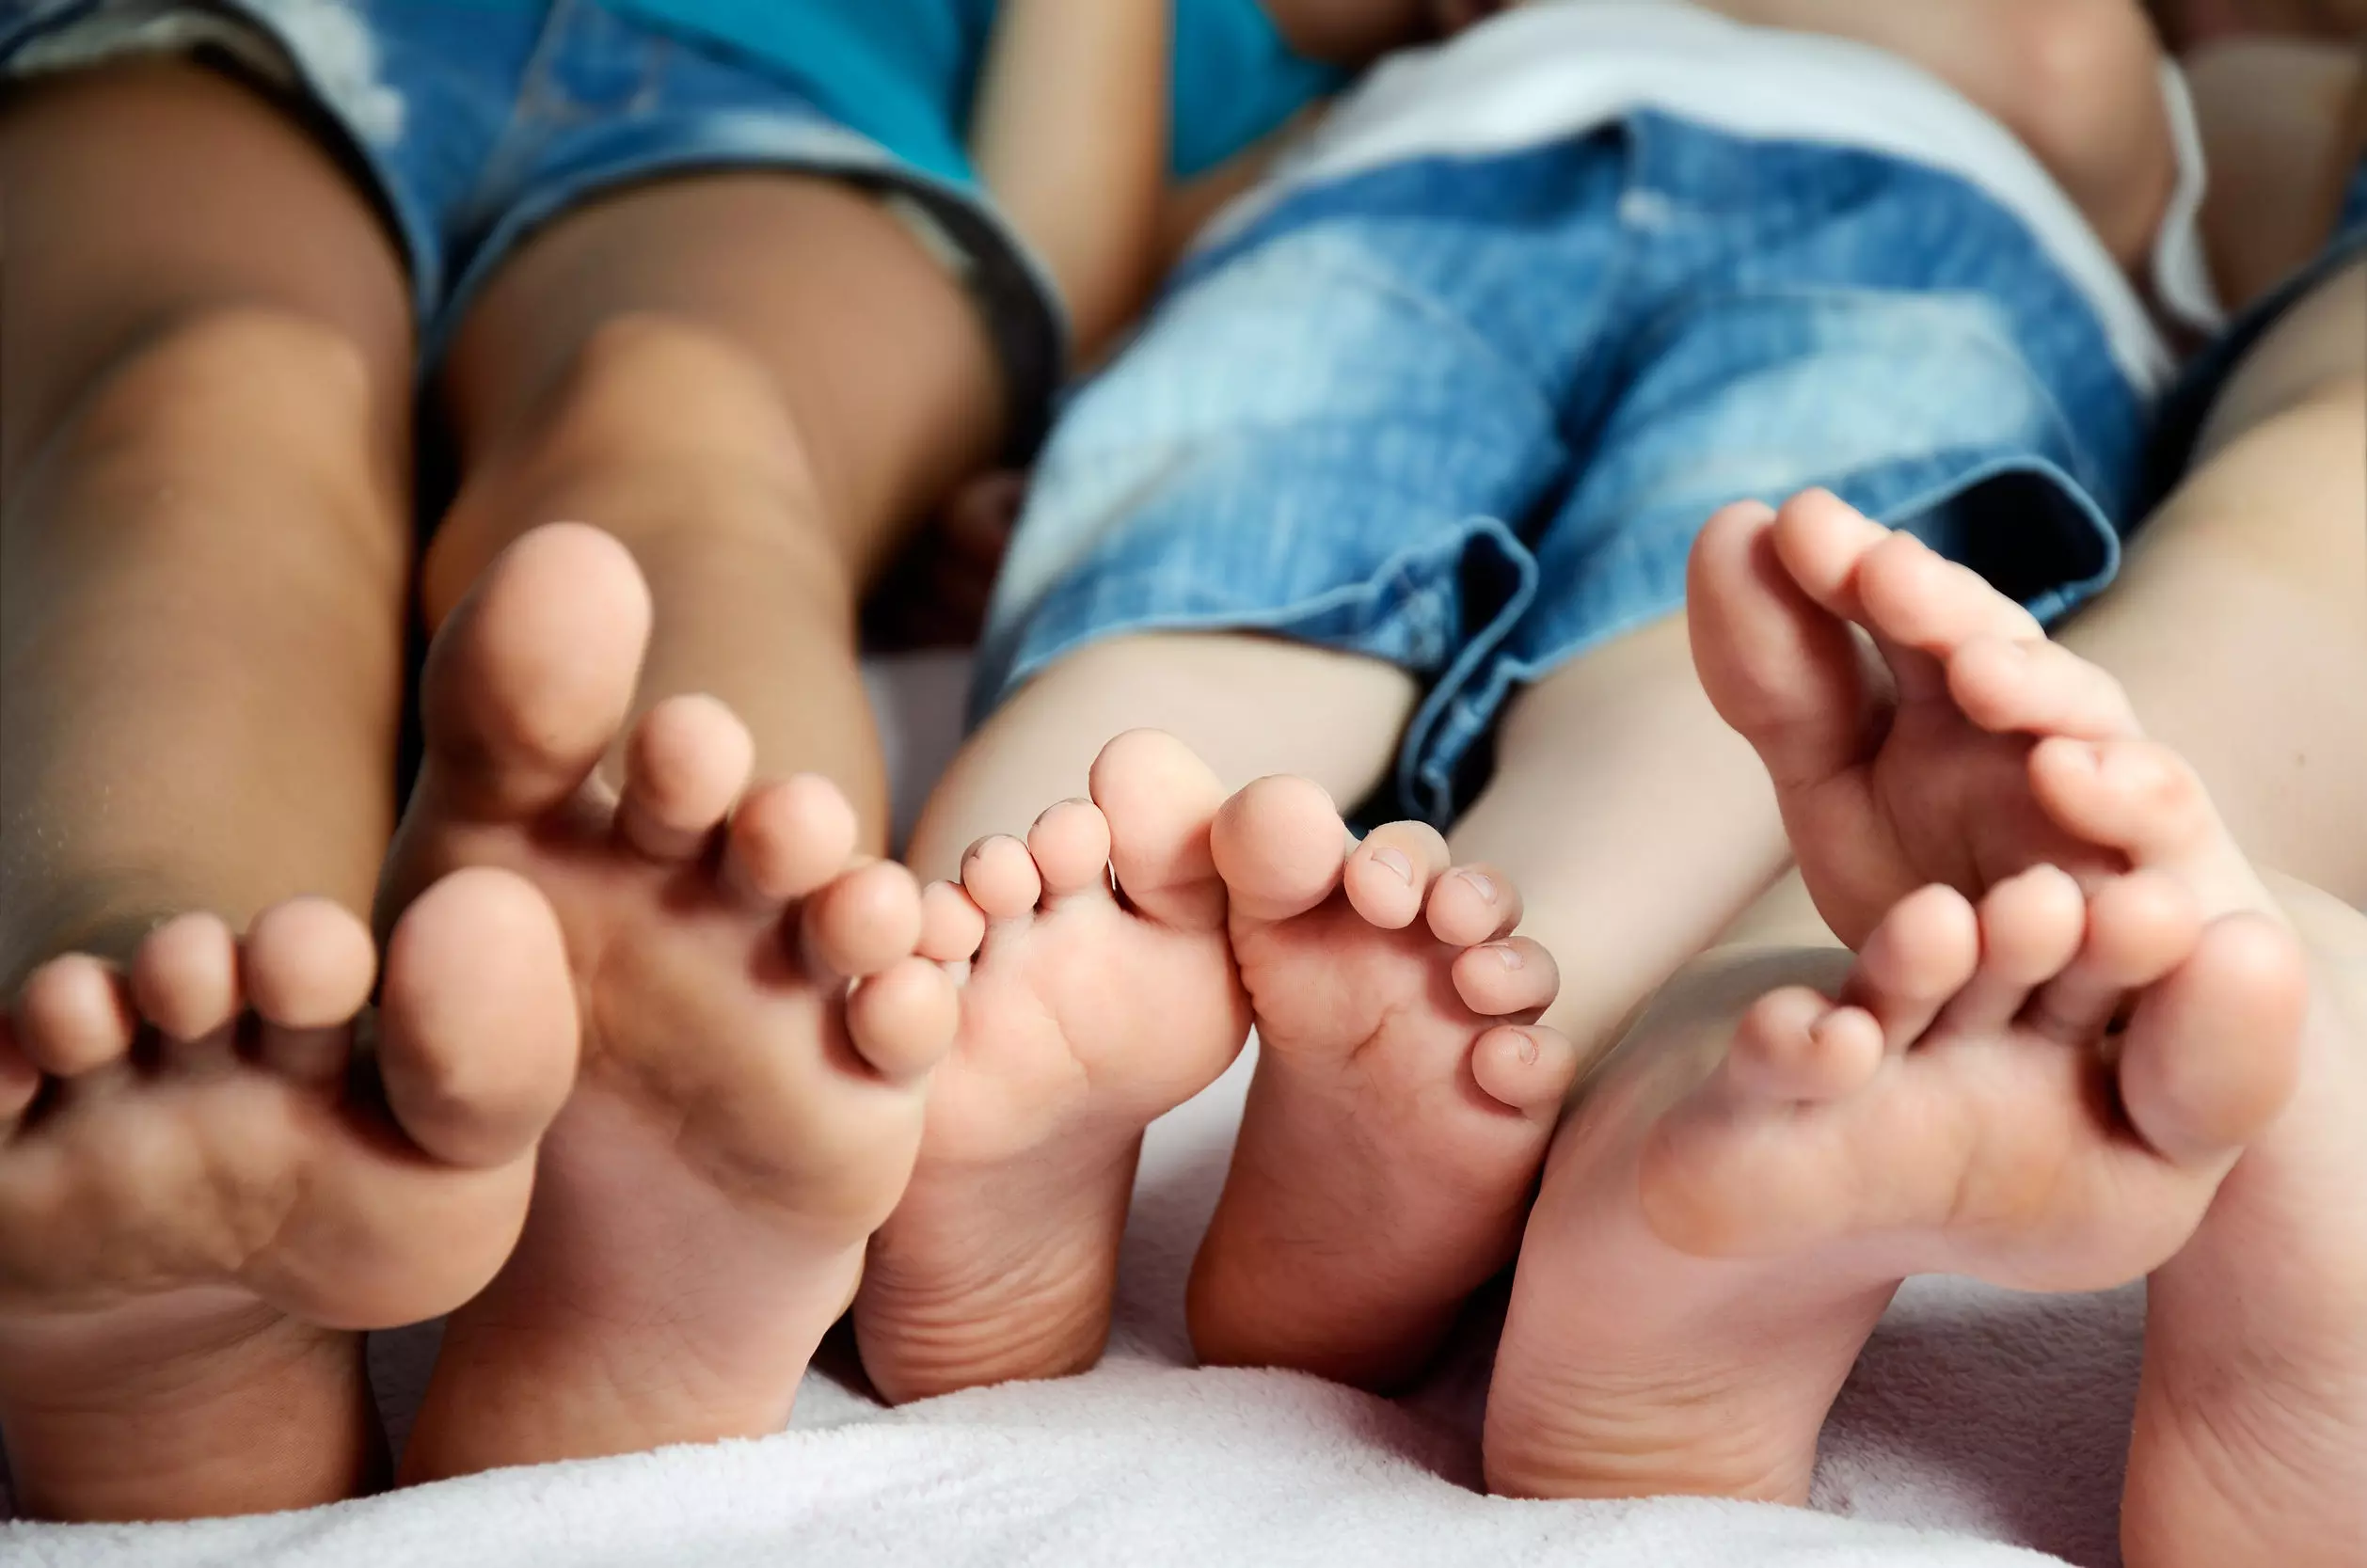 Podología pediátrica, el cuidado del pie infantil